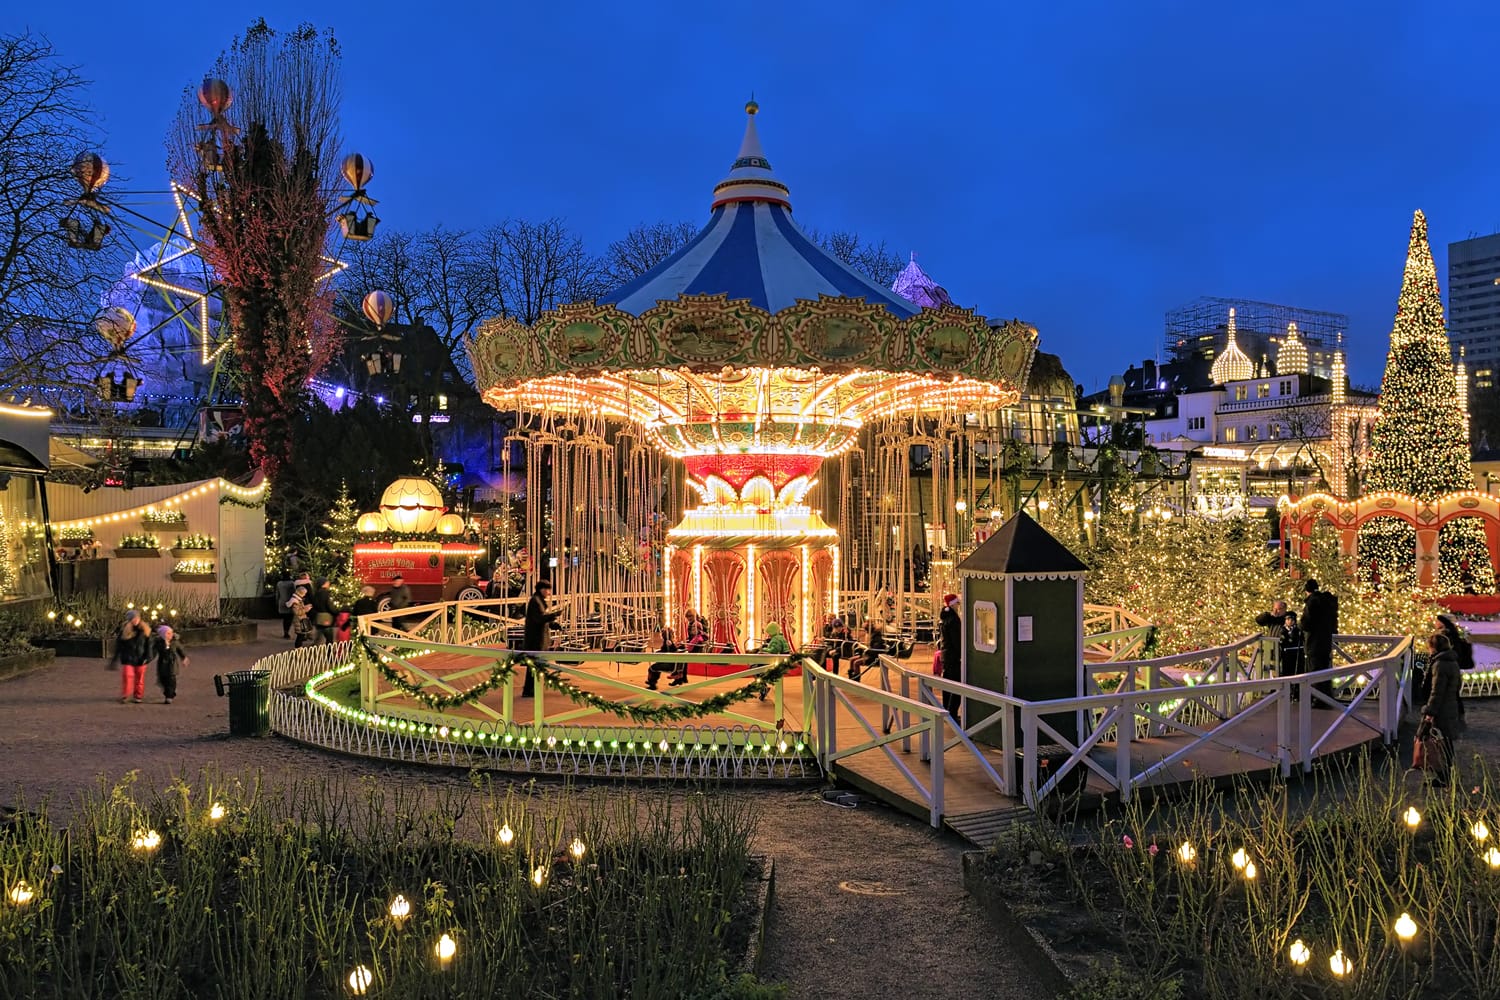 La giostra e l'illuminazione natalizia nei Giardini di Tivoli, un famoso parco divertimenti e giardino di piacere a Copenaghen, in Danimarca